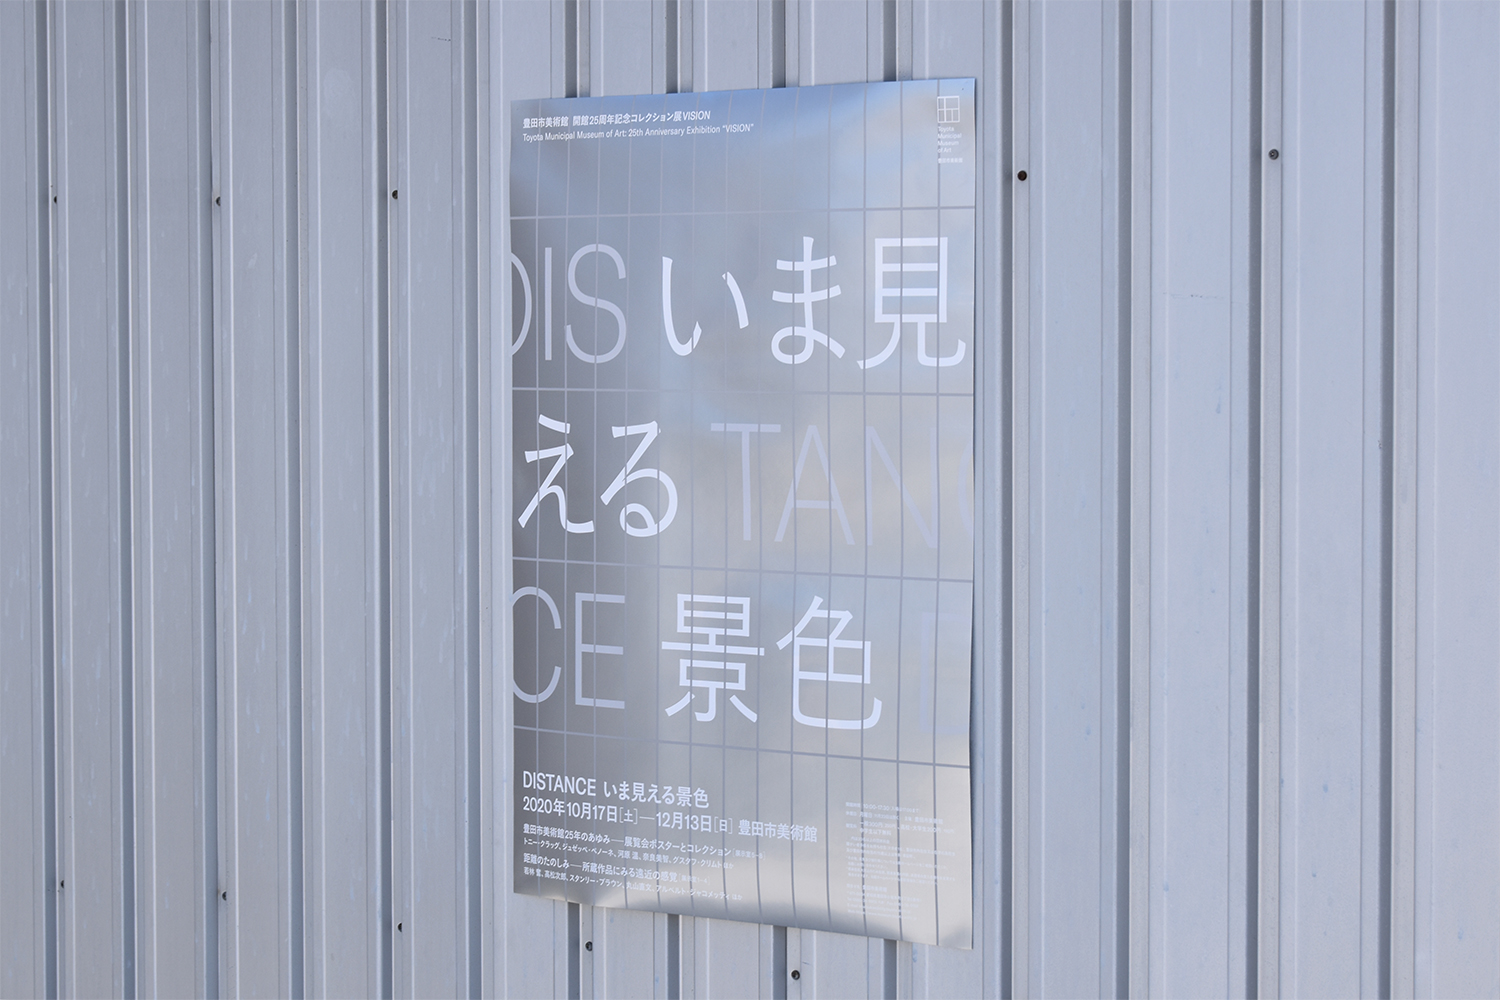 豊田市美術館開館25周年コレクション展VISION：DISTANCE いま見える景色